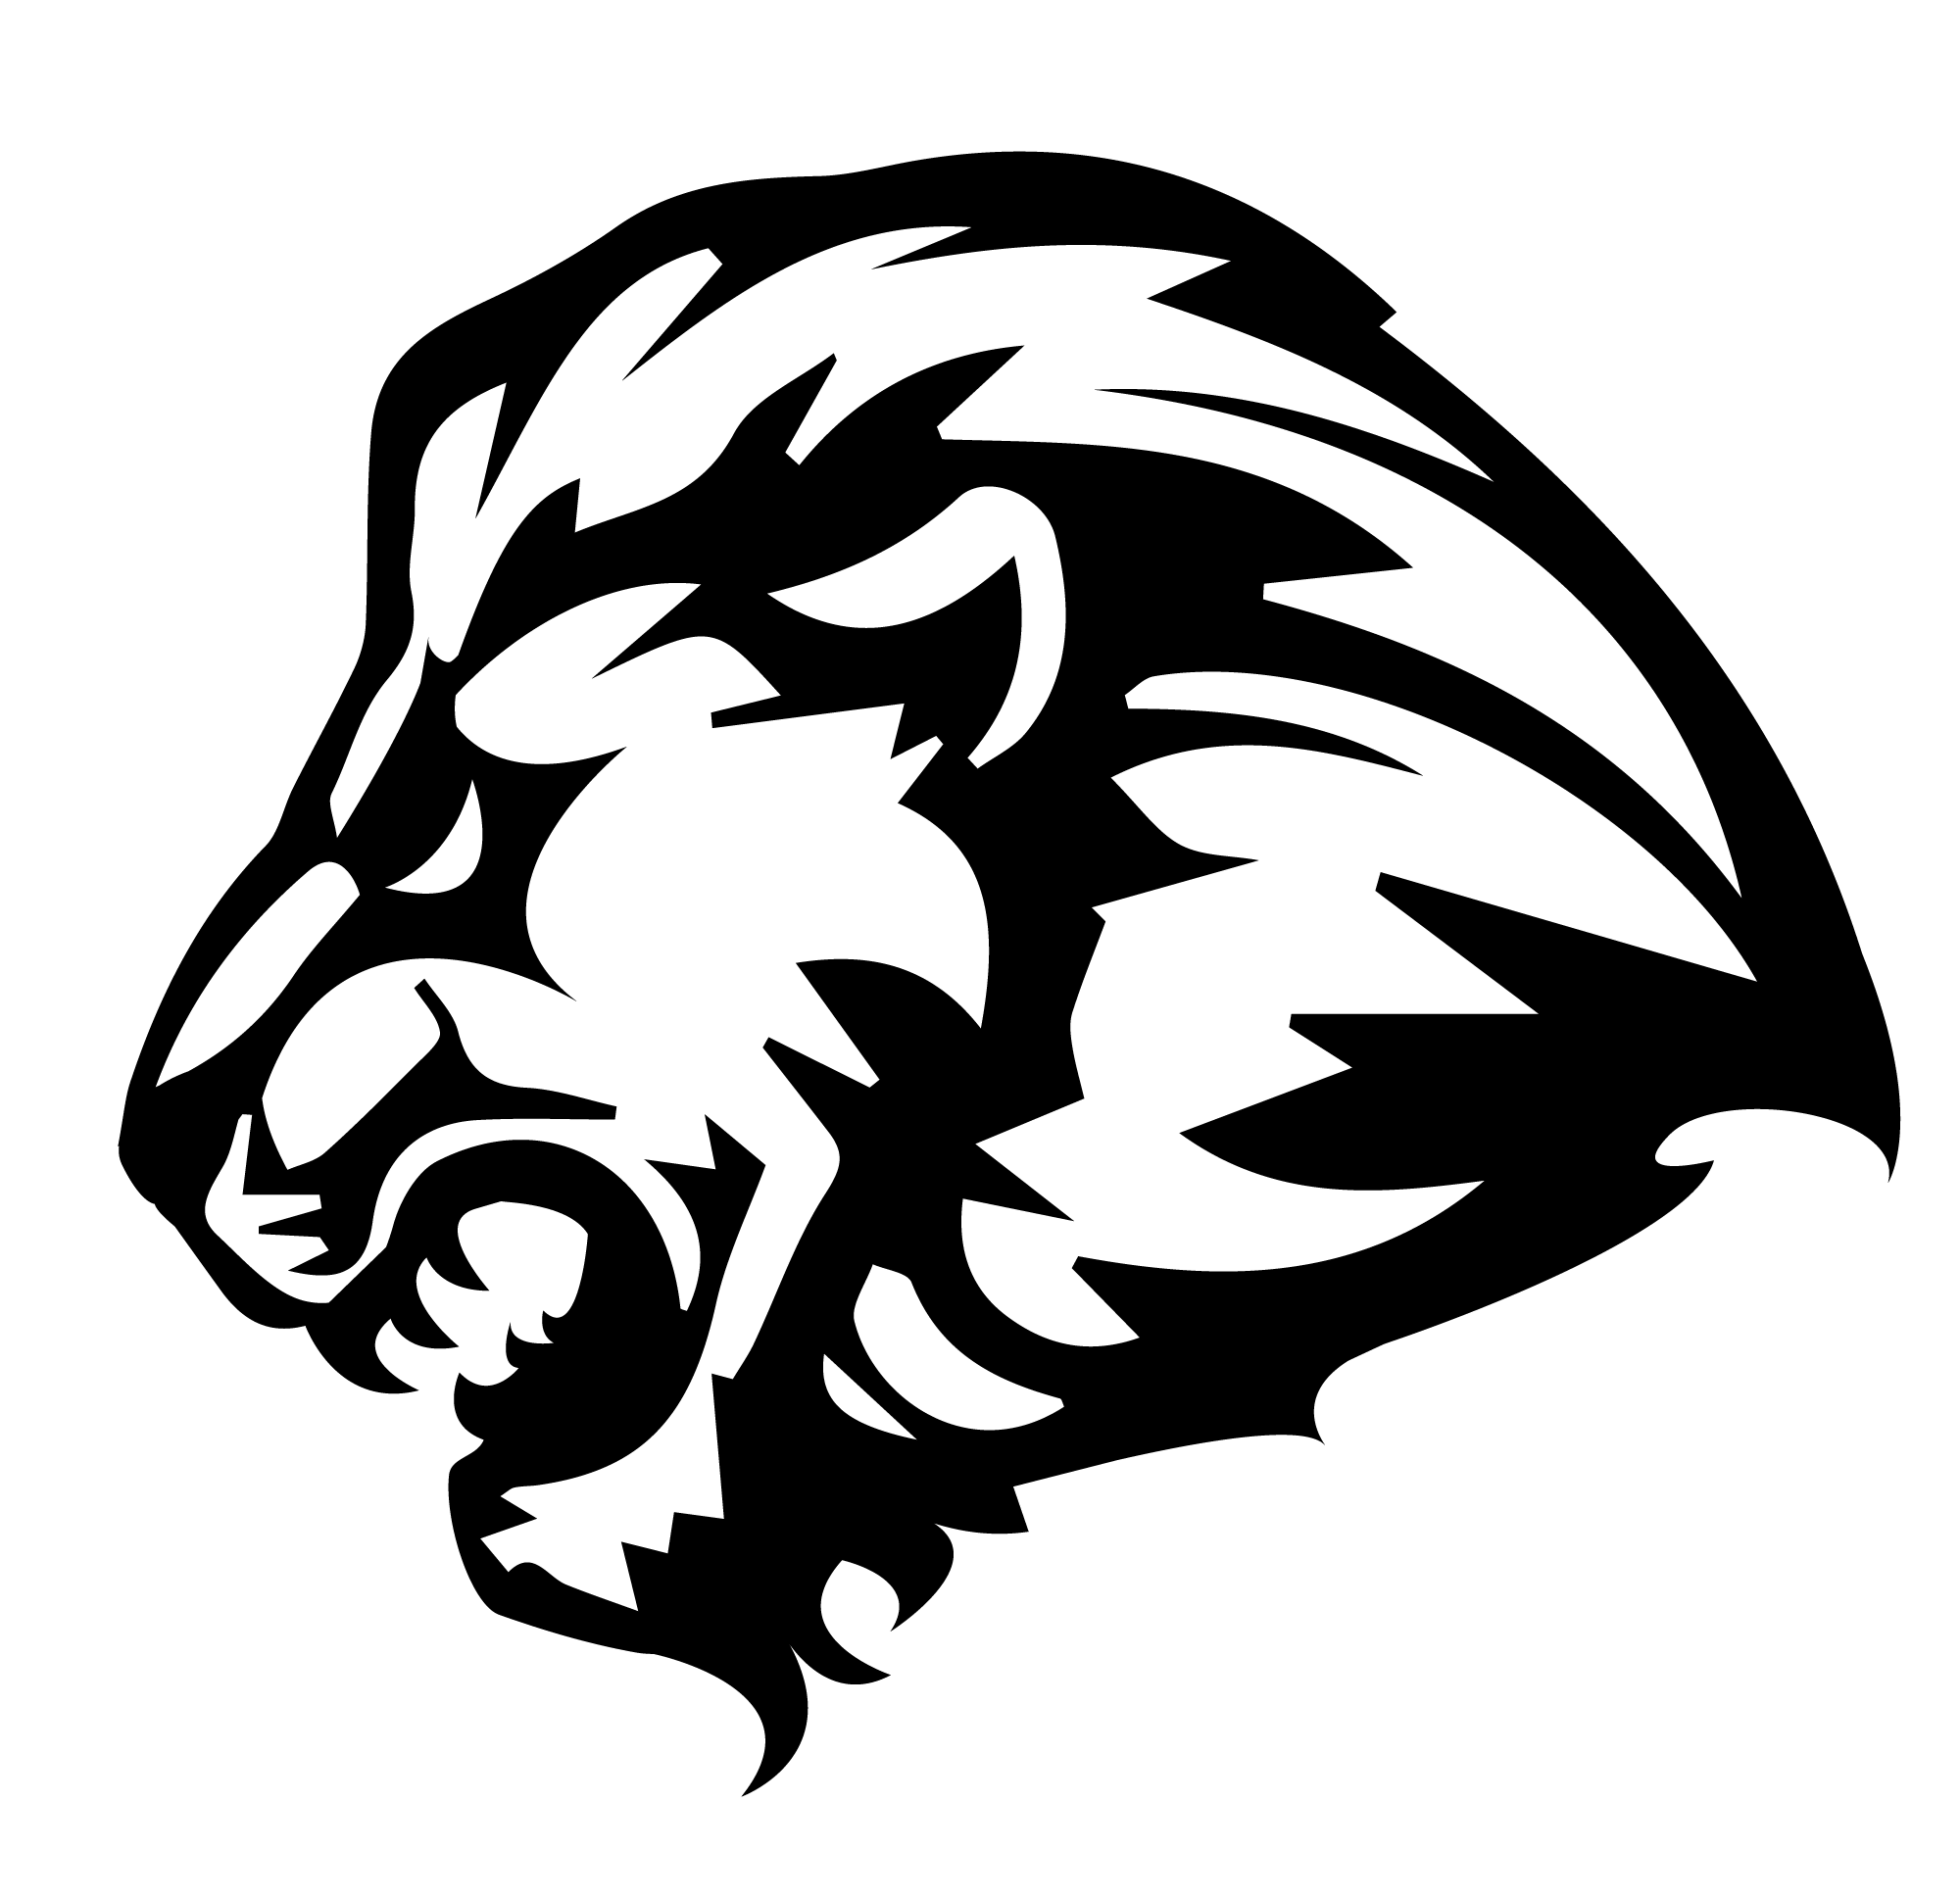 Lion Svg, Lion With Crown Png, Lion King Dxf, Lion Roaring Silhouette  Clipart Cut File Cricut, Cameo, Printable Lion Roar, Digital Download -  Etsy | Art logo, Photography logo design, Lion logo